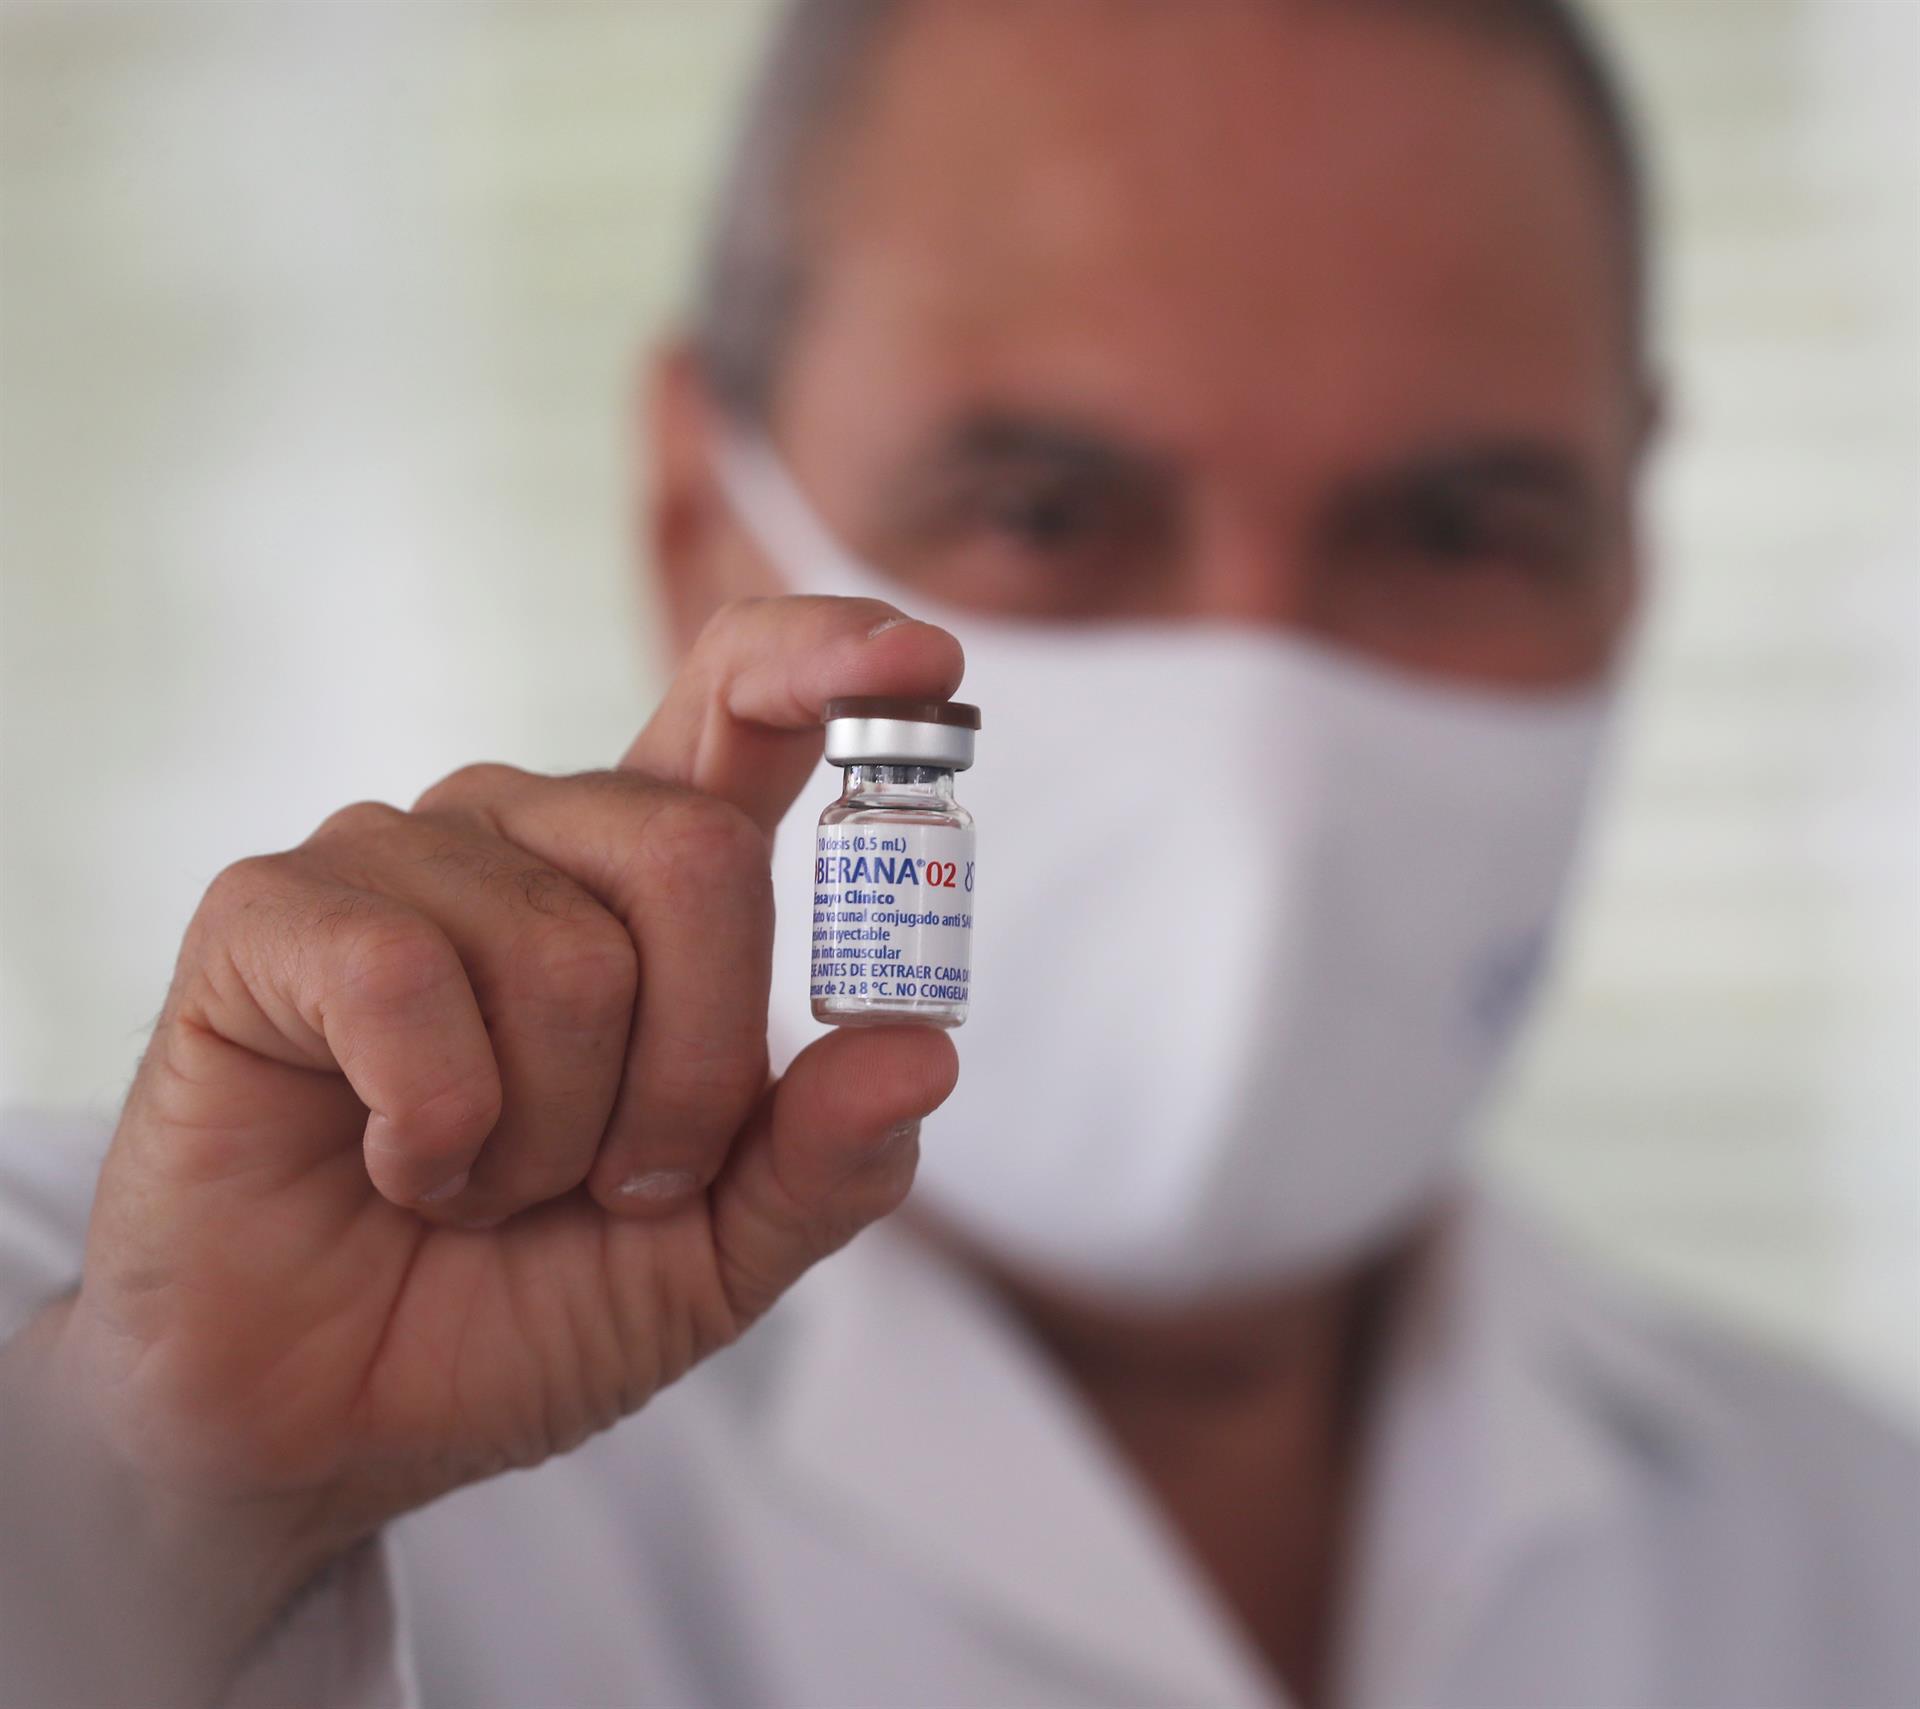 Soberana 02, la potencial vacuna cubana mostró eficacia de un 62% en ensayos